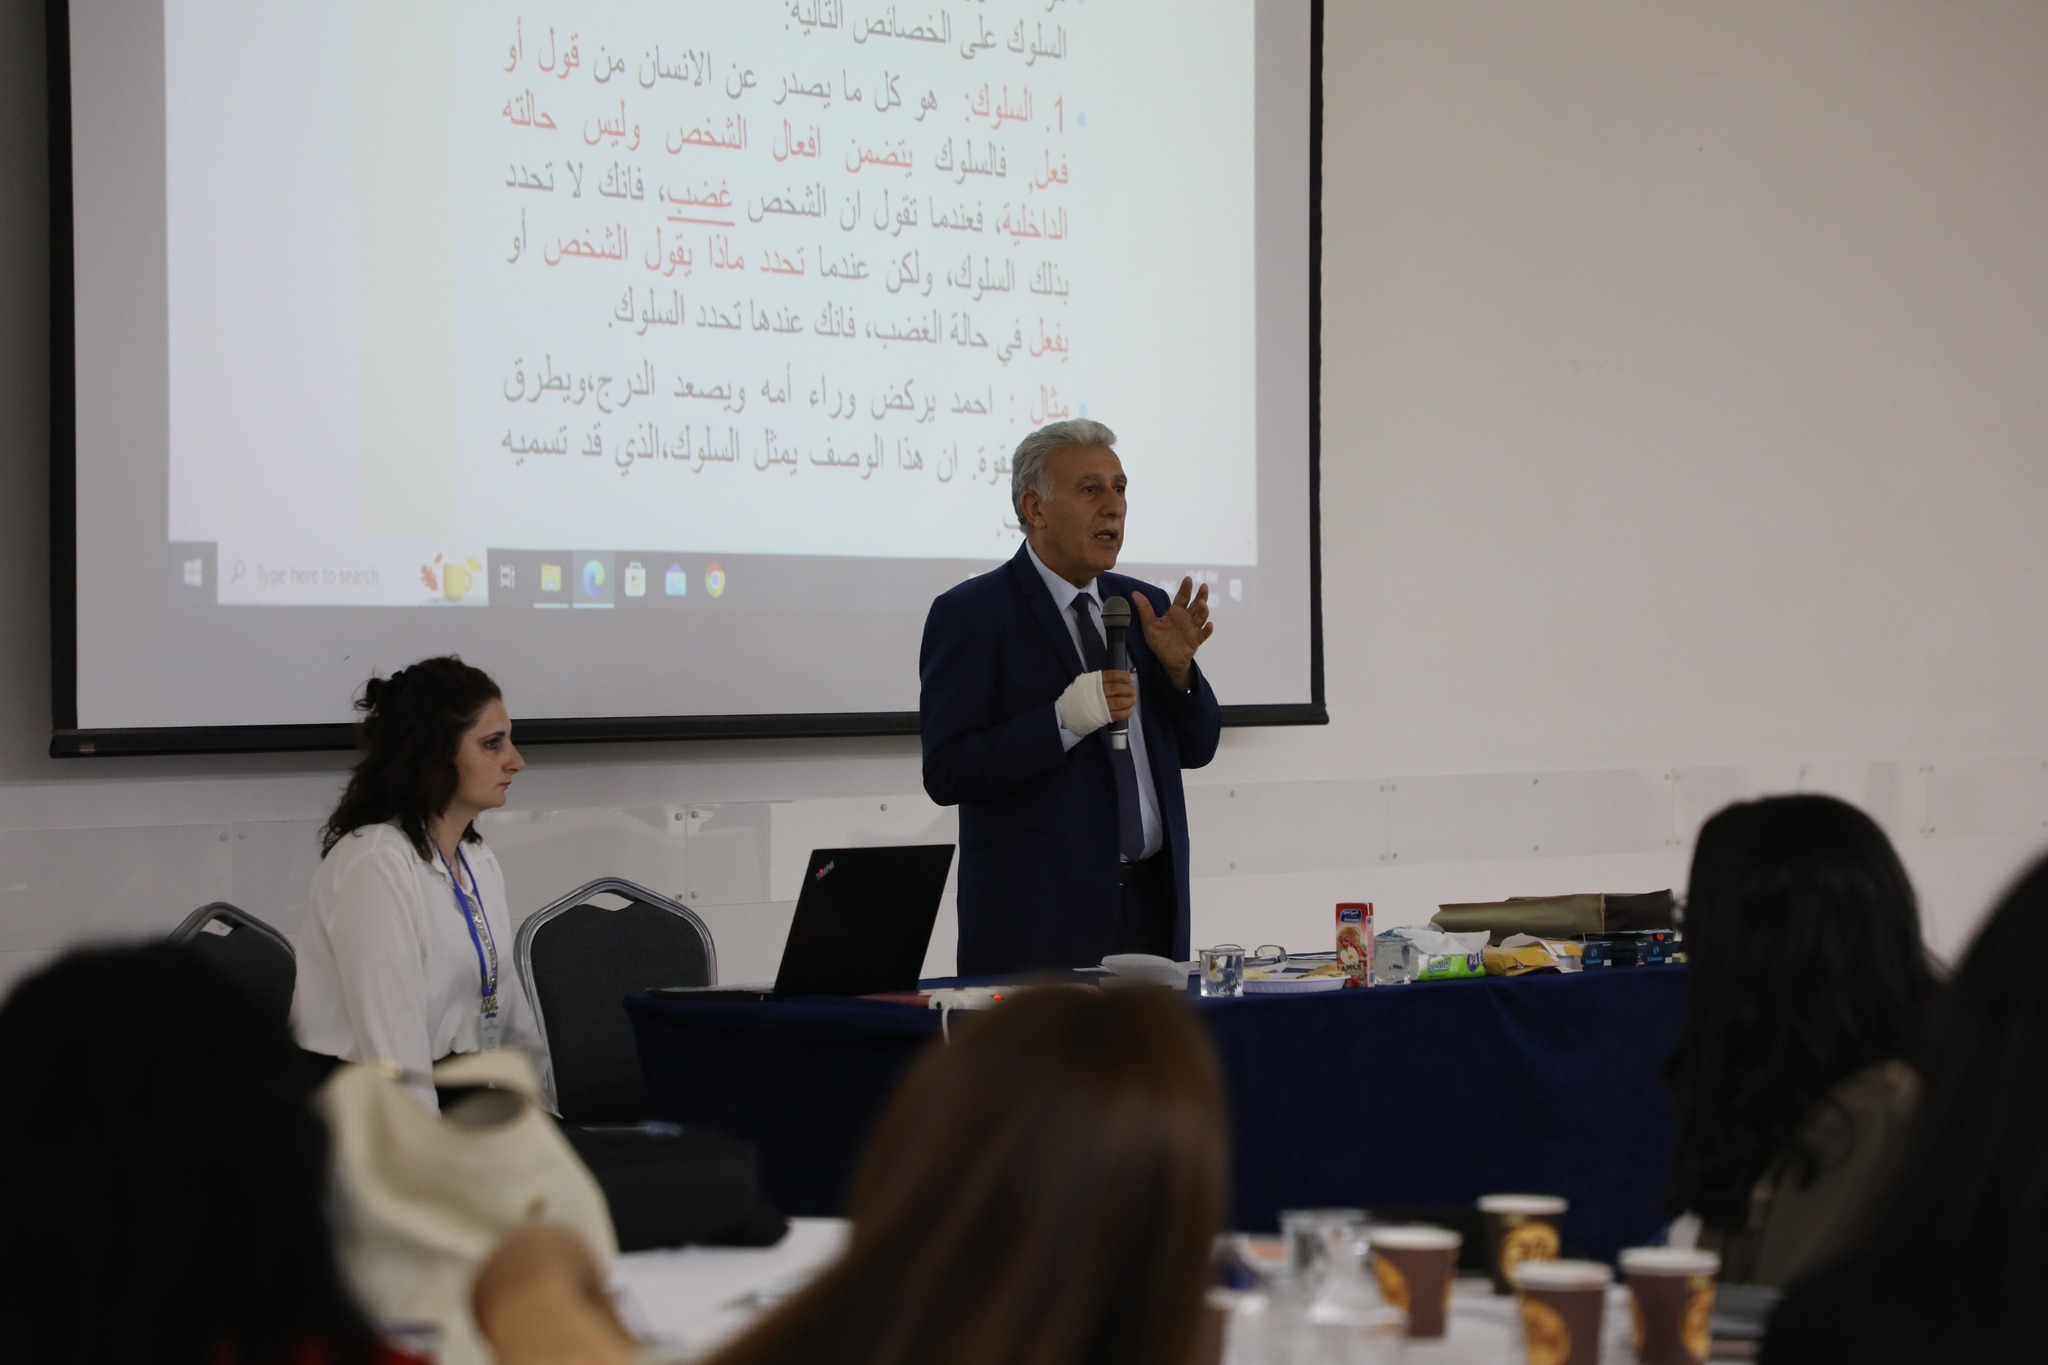 تربوية "عمّان العربية" تنفذ ورشة "تحليل السلوك" خلال مؤتمر "الصحة النفسية"3